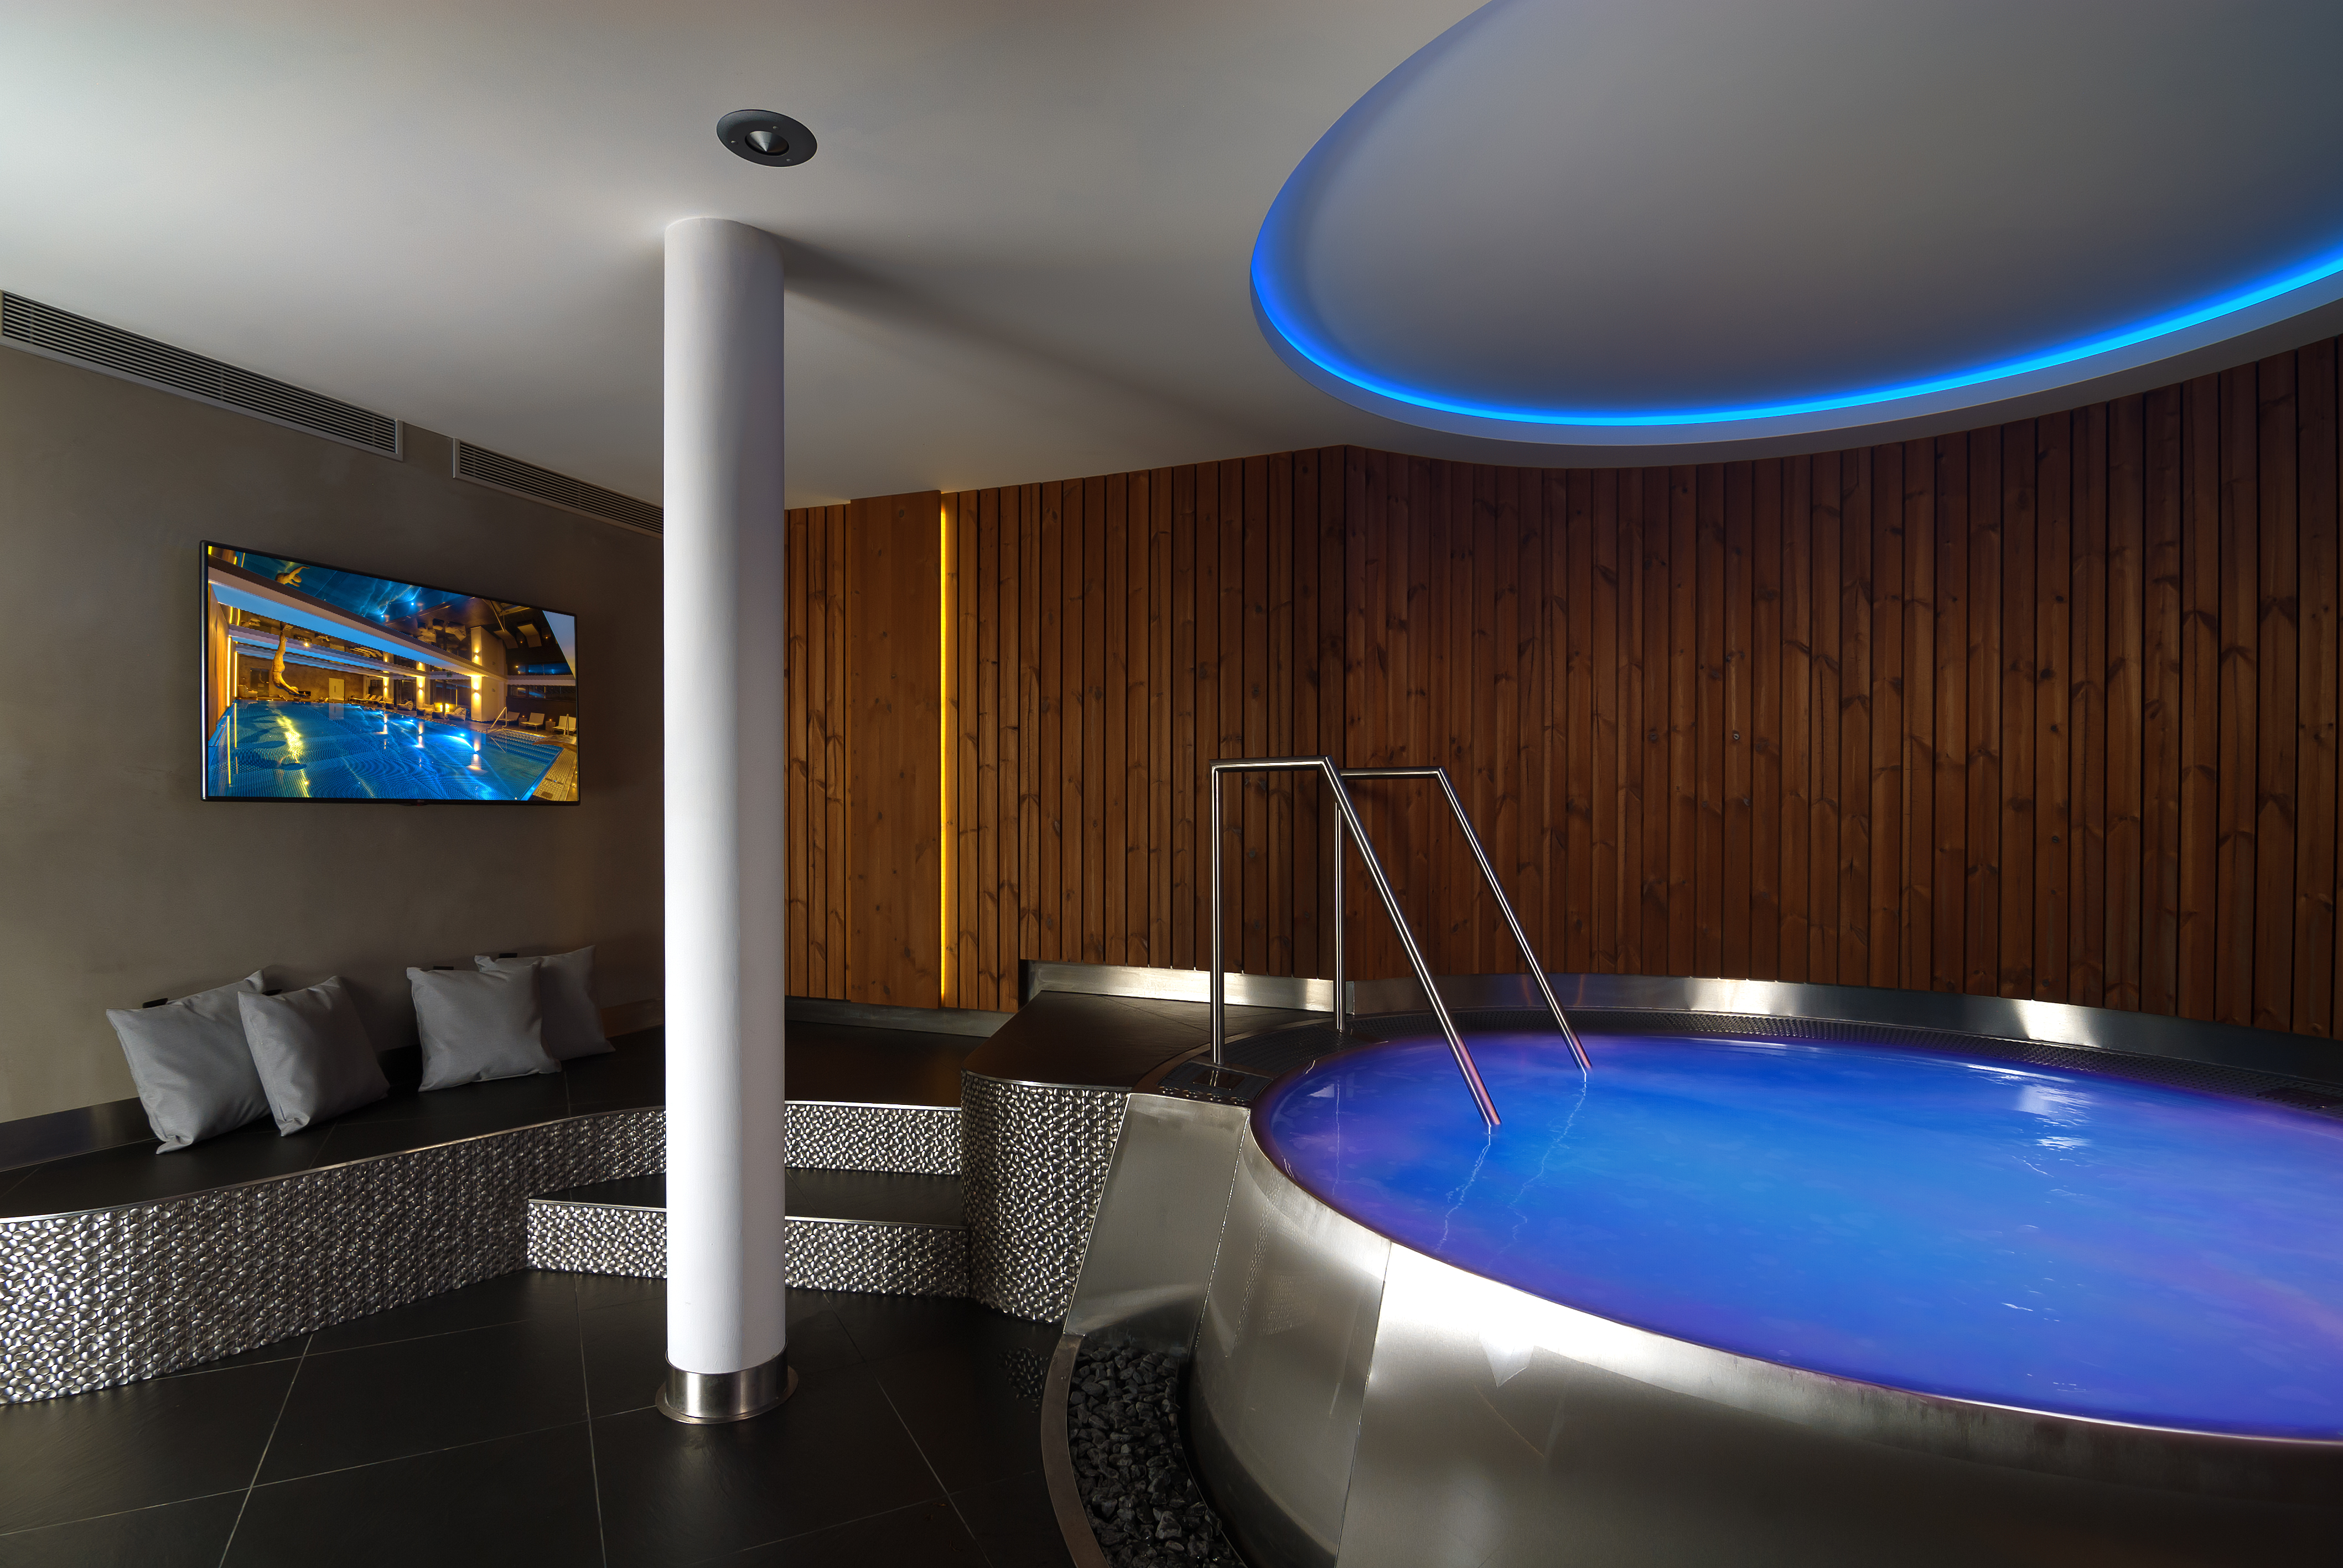 IMAGINOX luxury stainless steel hot tubE